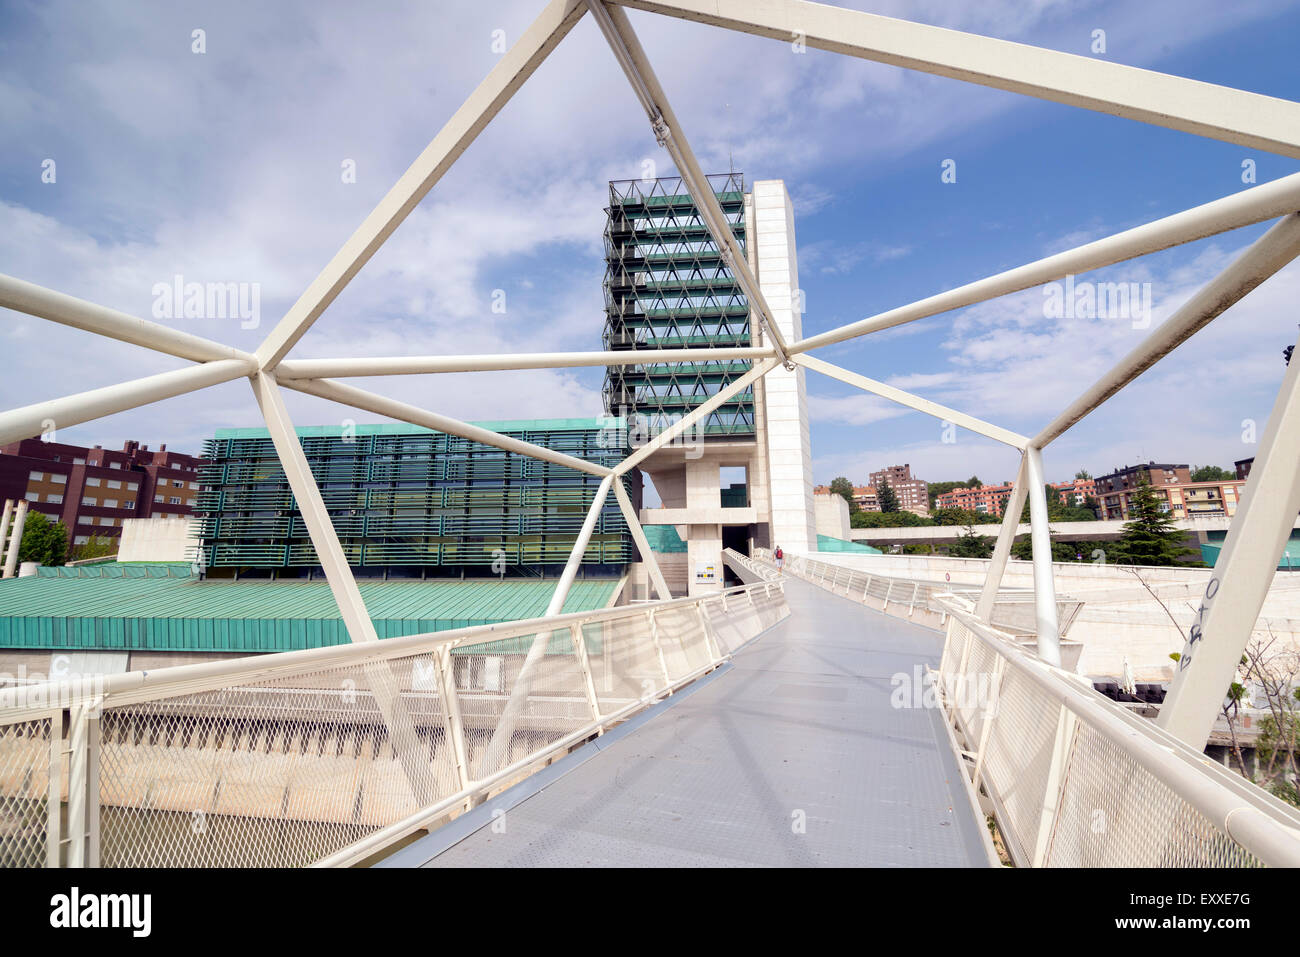 VALLADOLID, España - Julio 17, 2015: el Museo de la ciencia de Valladolid fue inaugurado en mayo de 2003. Foto de stock